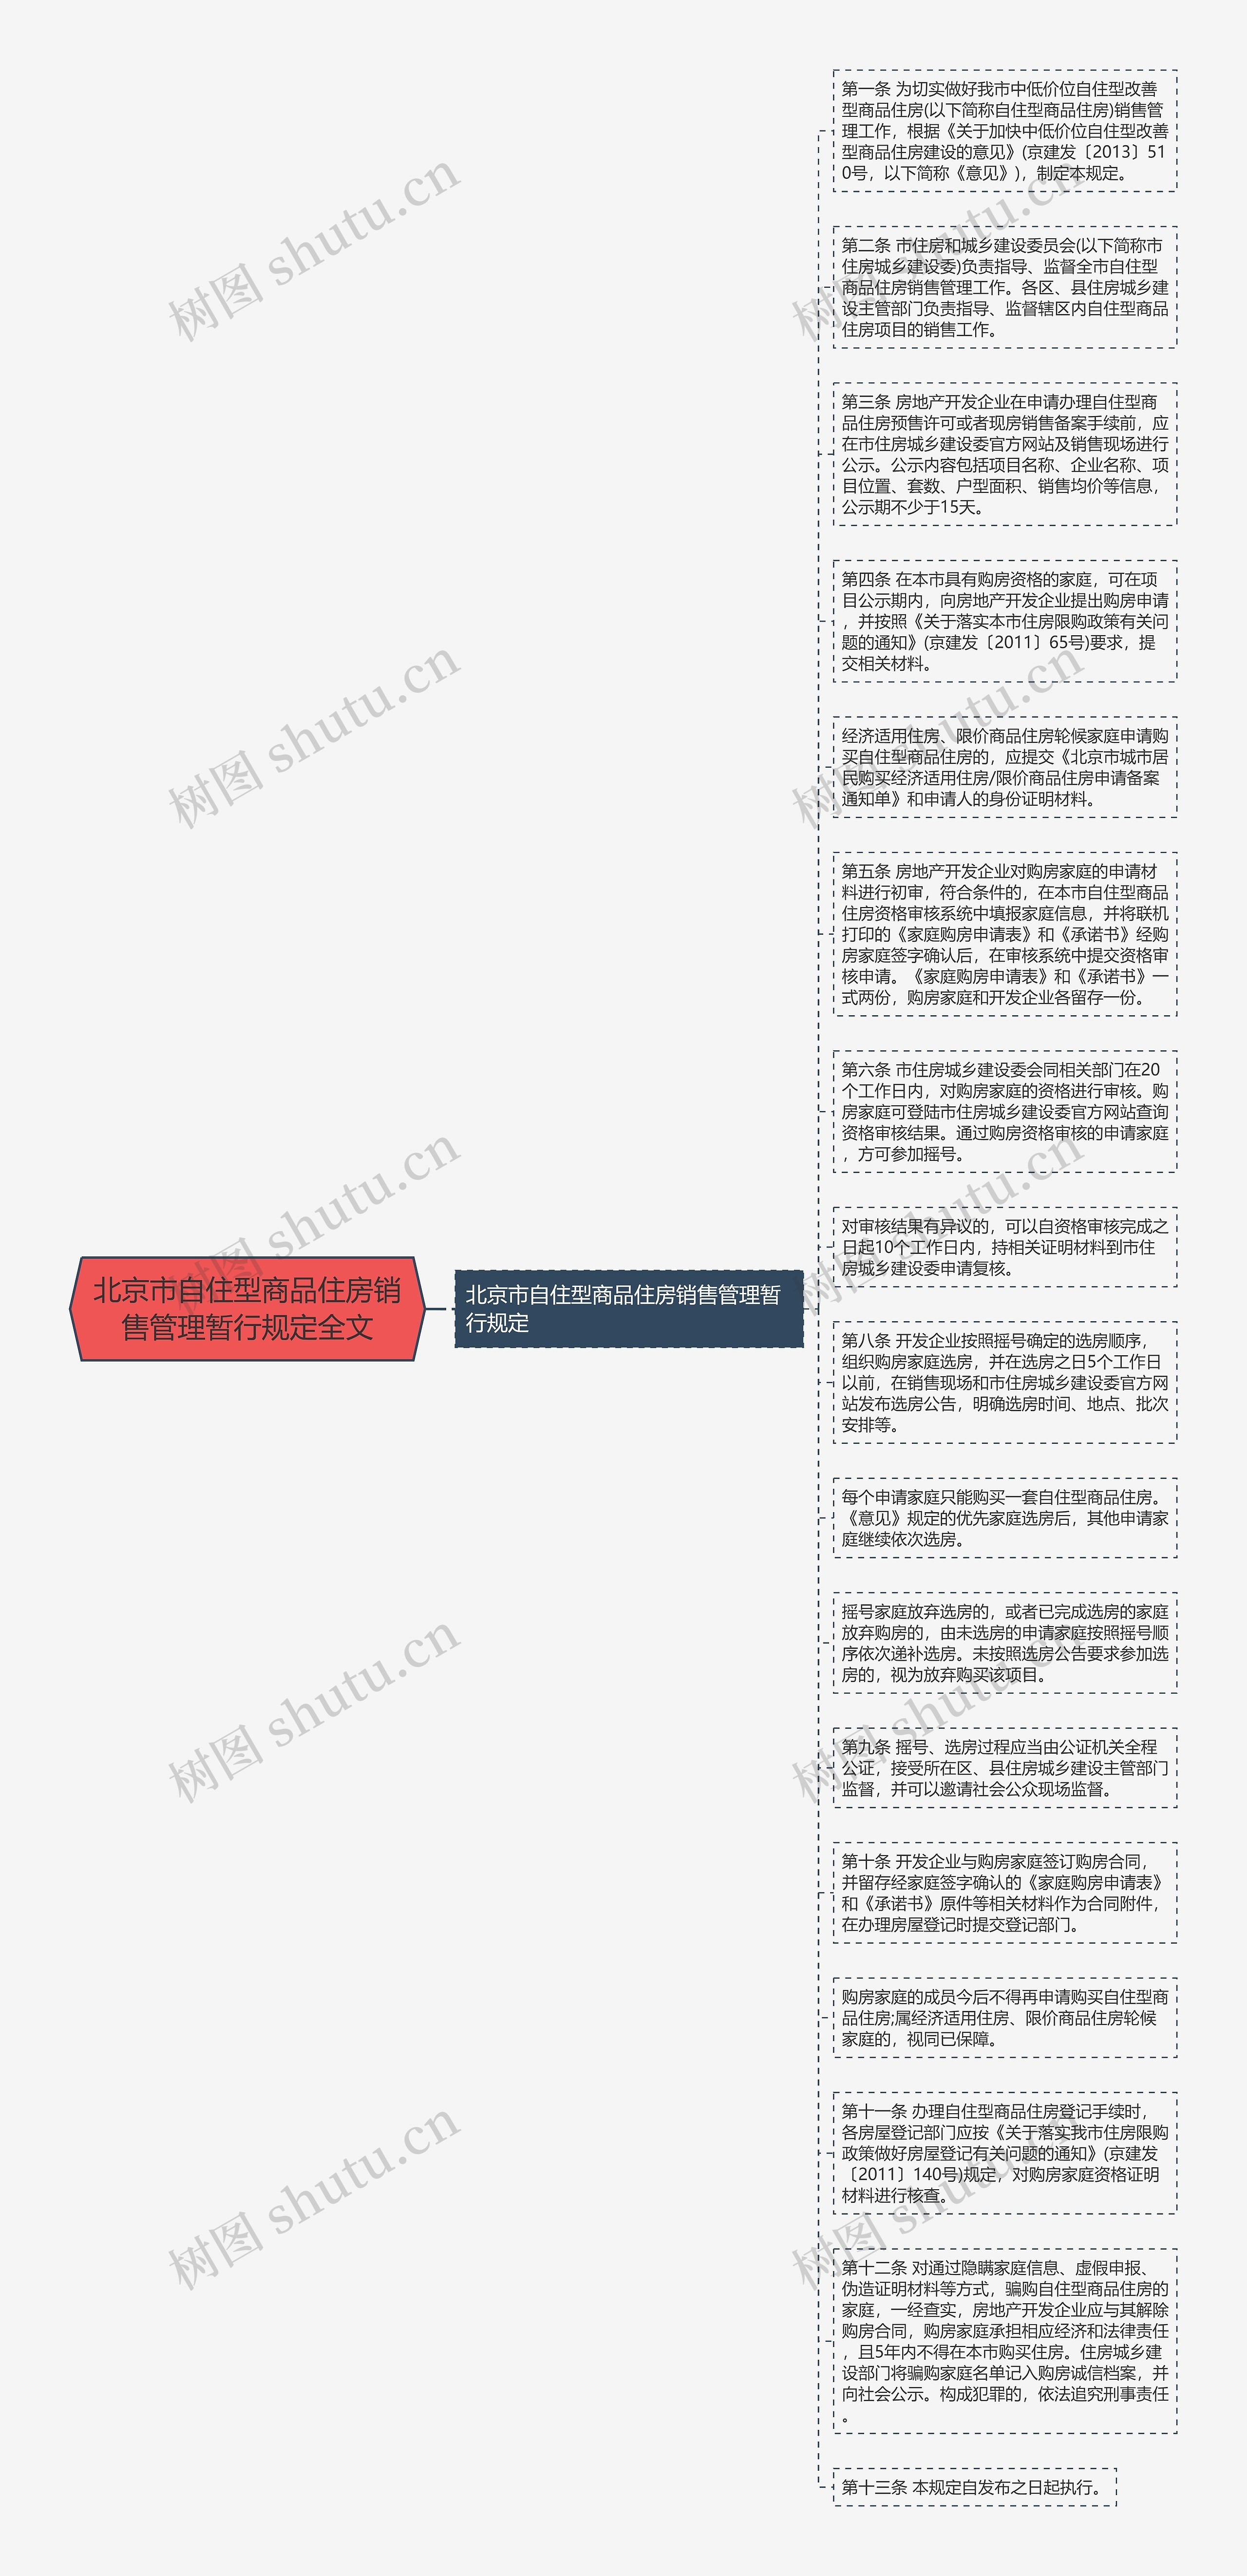 北京市自住型商品住房销售管理暂行规定全文思维导图